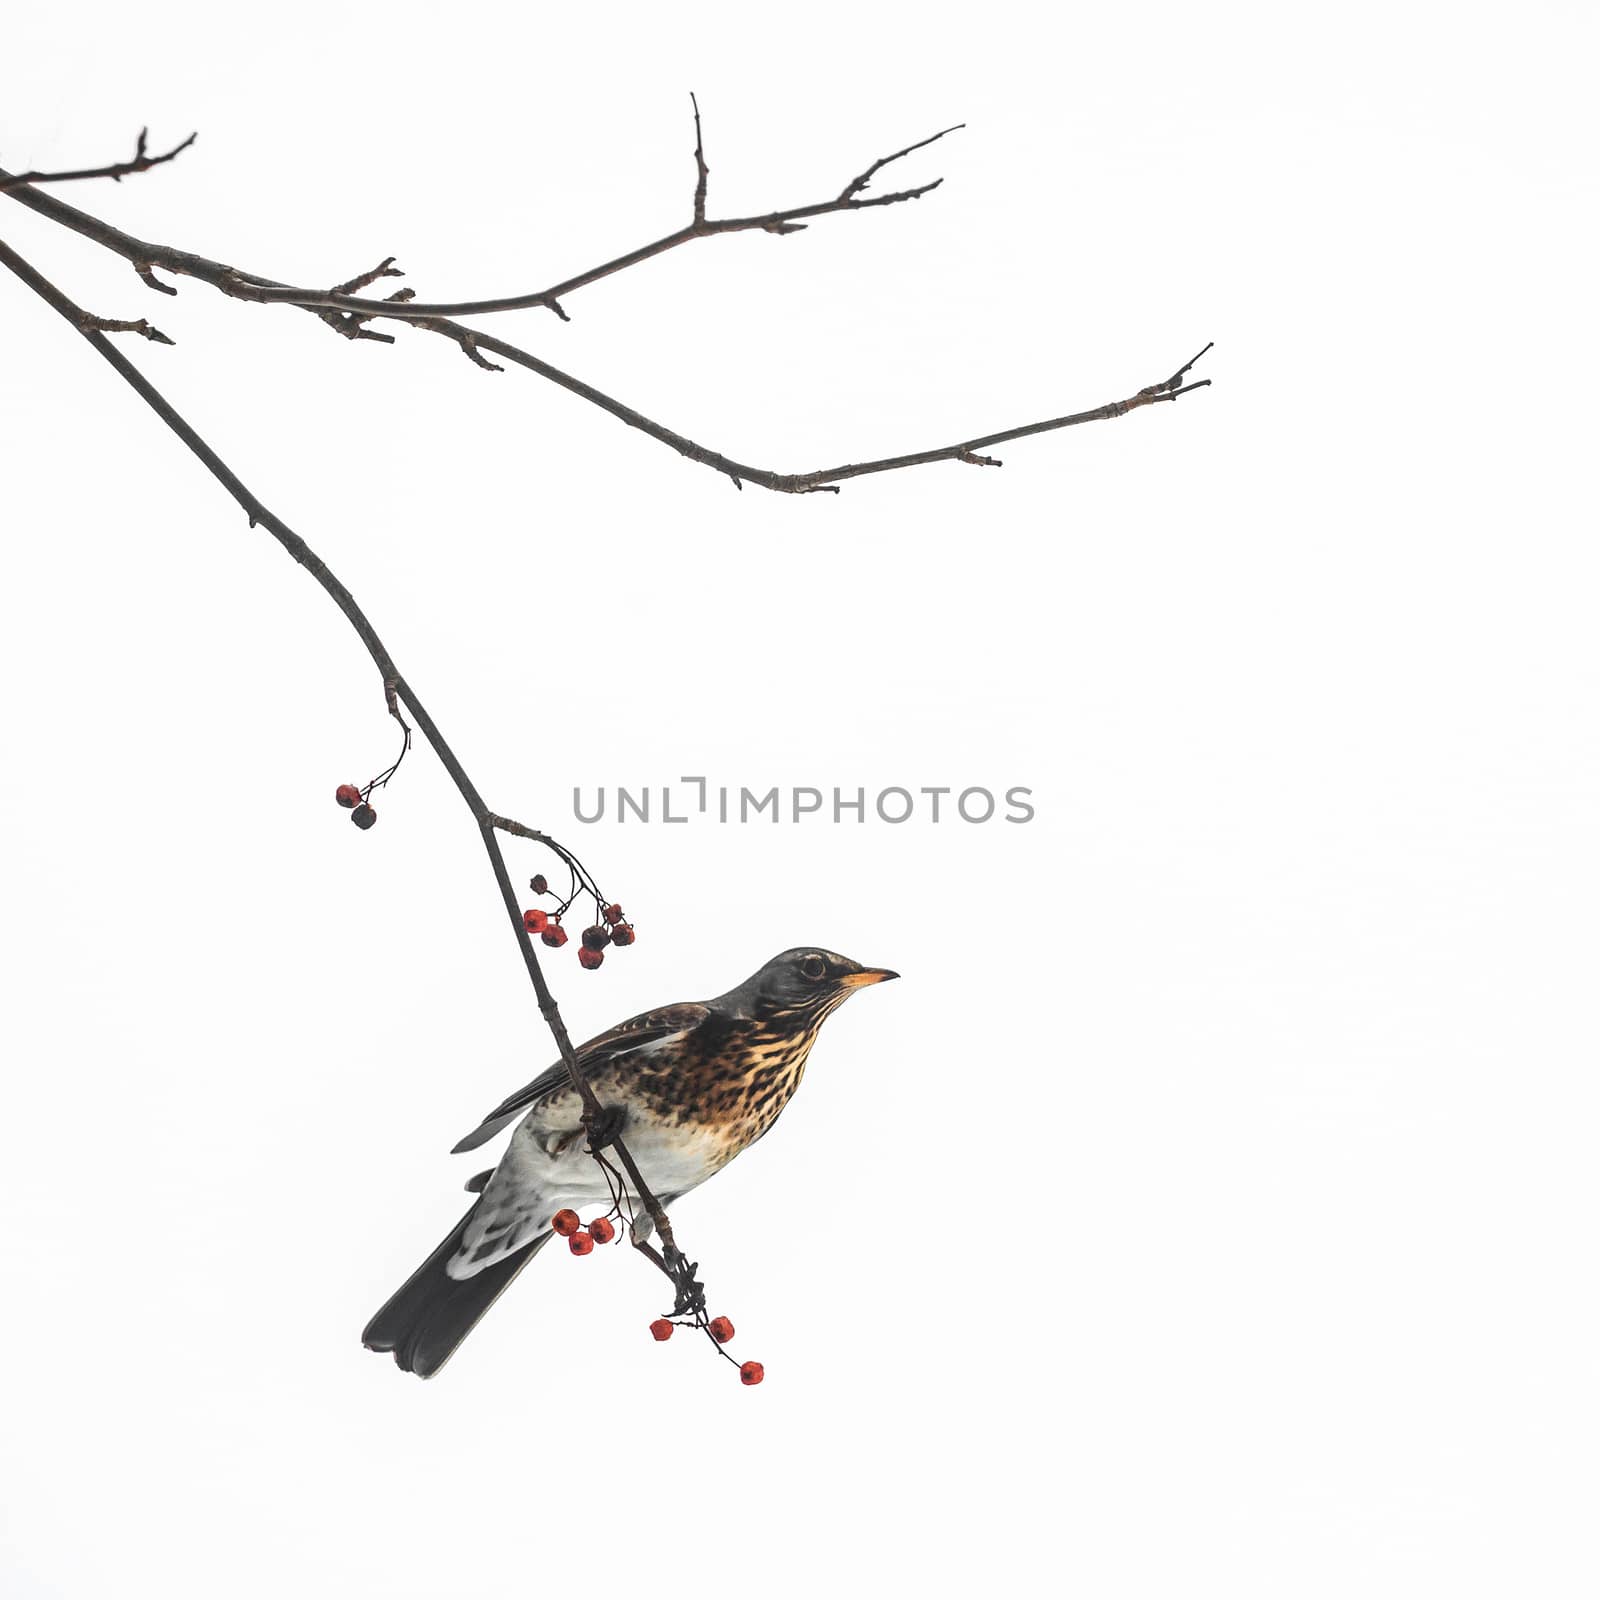 Thrush bird sits on a rowan branch against the sky